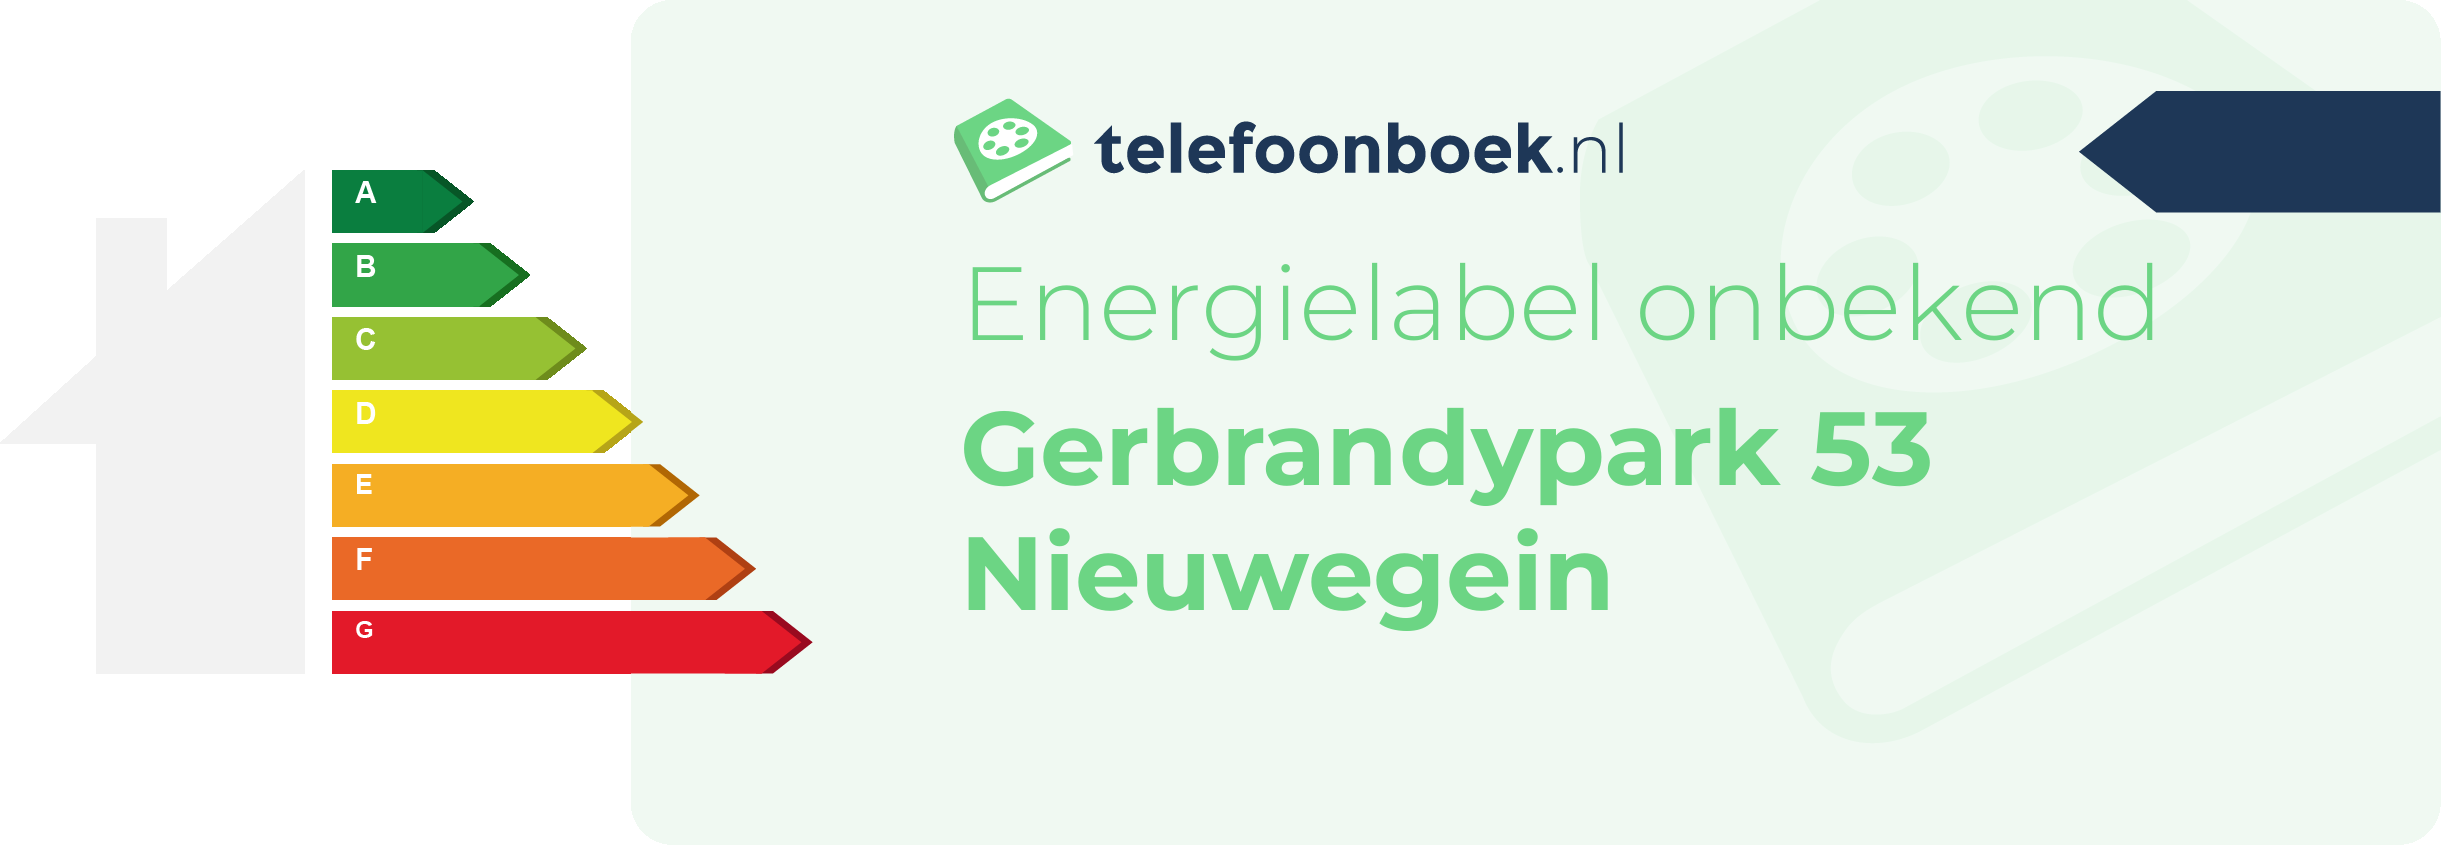 Energielabel Gerbrandypark 53 Nieuwegein